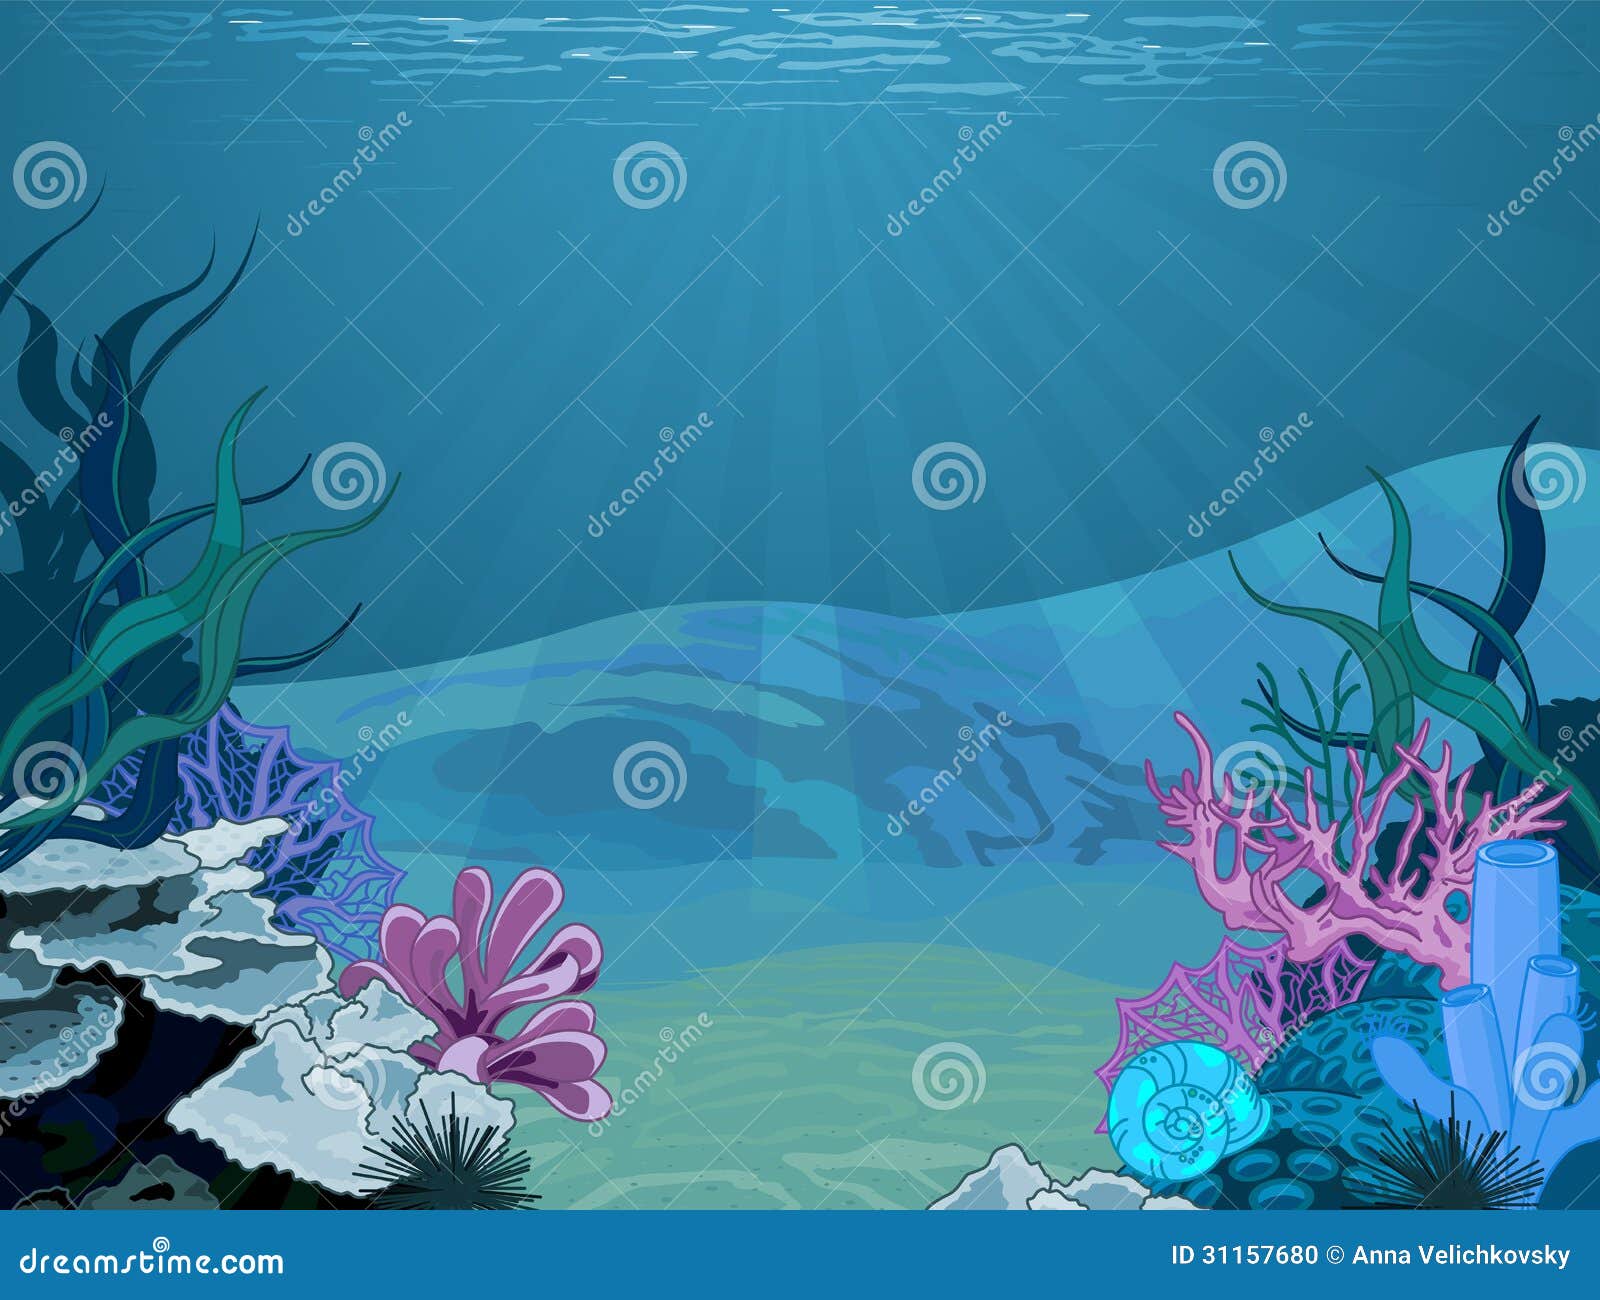 underwater background clipart - photo #4